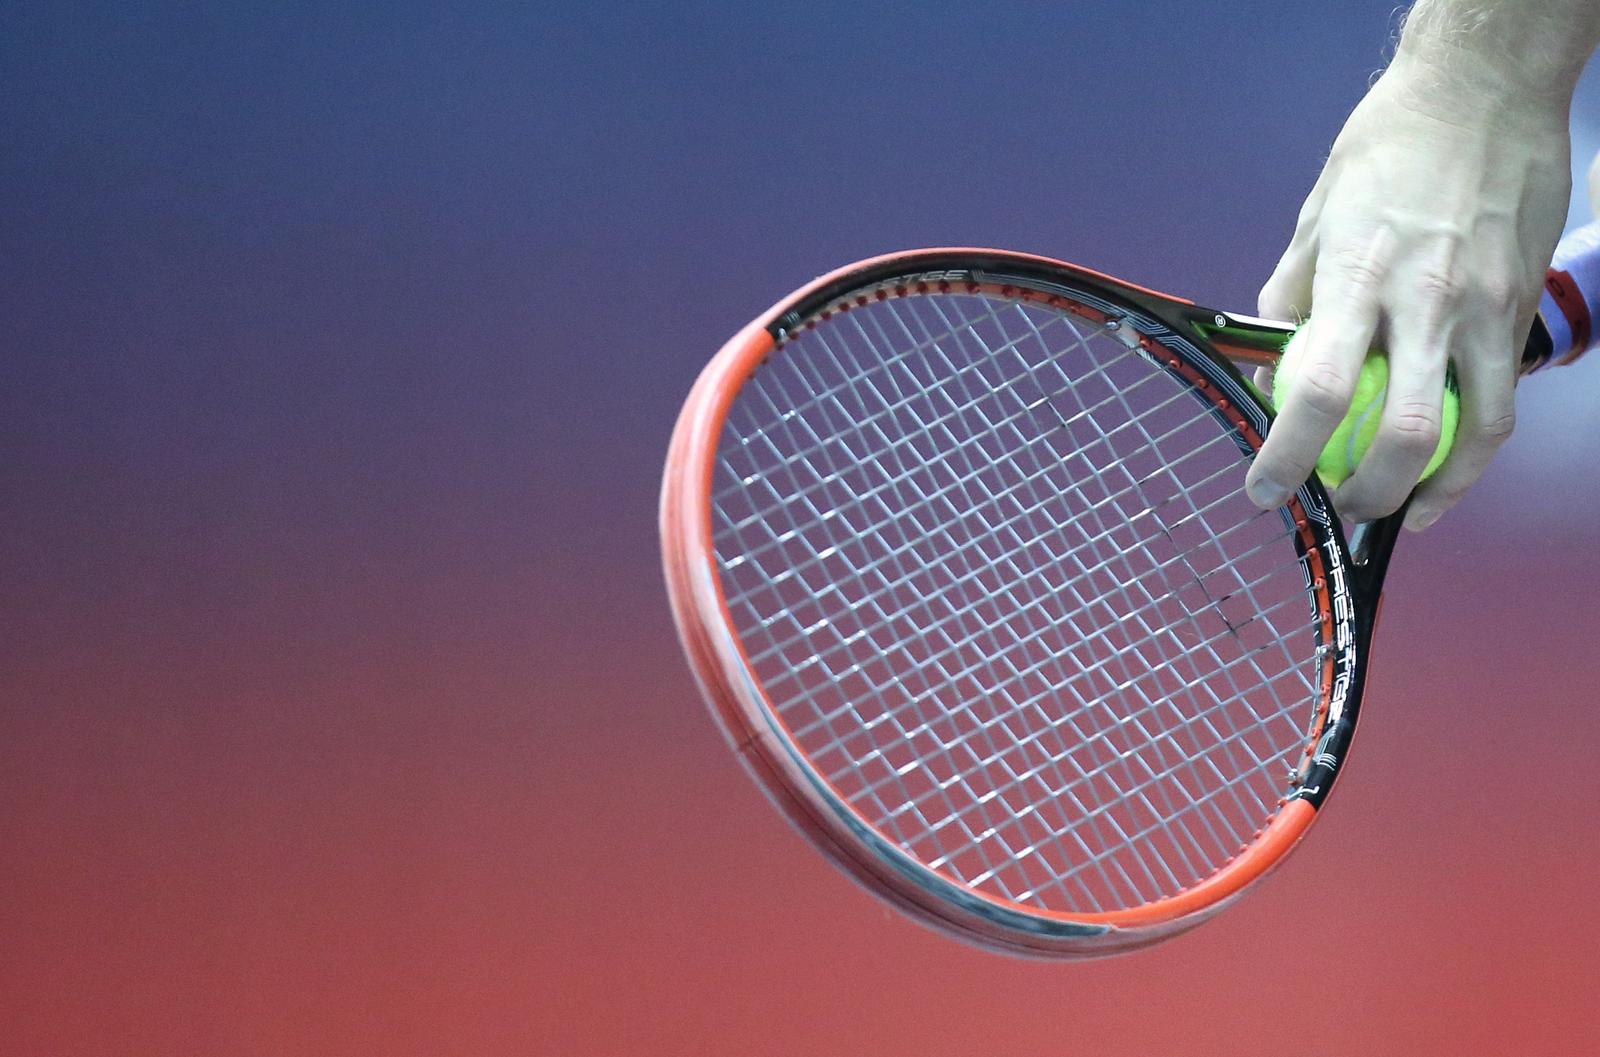 03.02.2015., Dom sportova, Zagreb - 10. ATP turnir PBZ Zagreb Indoors 2015, 1. kolo, Go Soeda (JPN) - Matthias Bachinger (GER). "nPhoto: Sanjin Strukic/PIXSELL